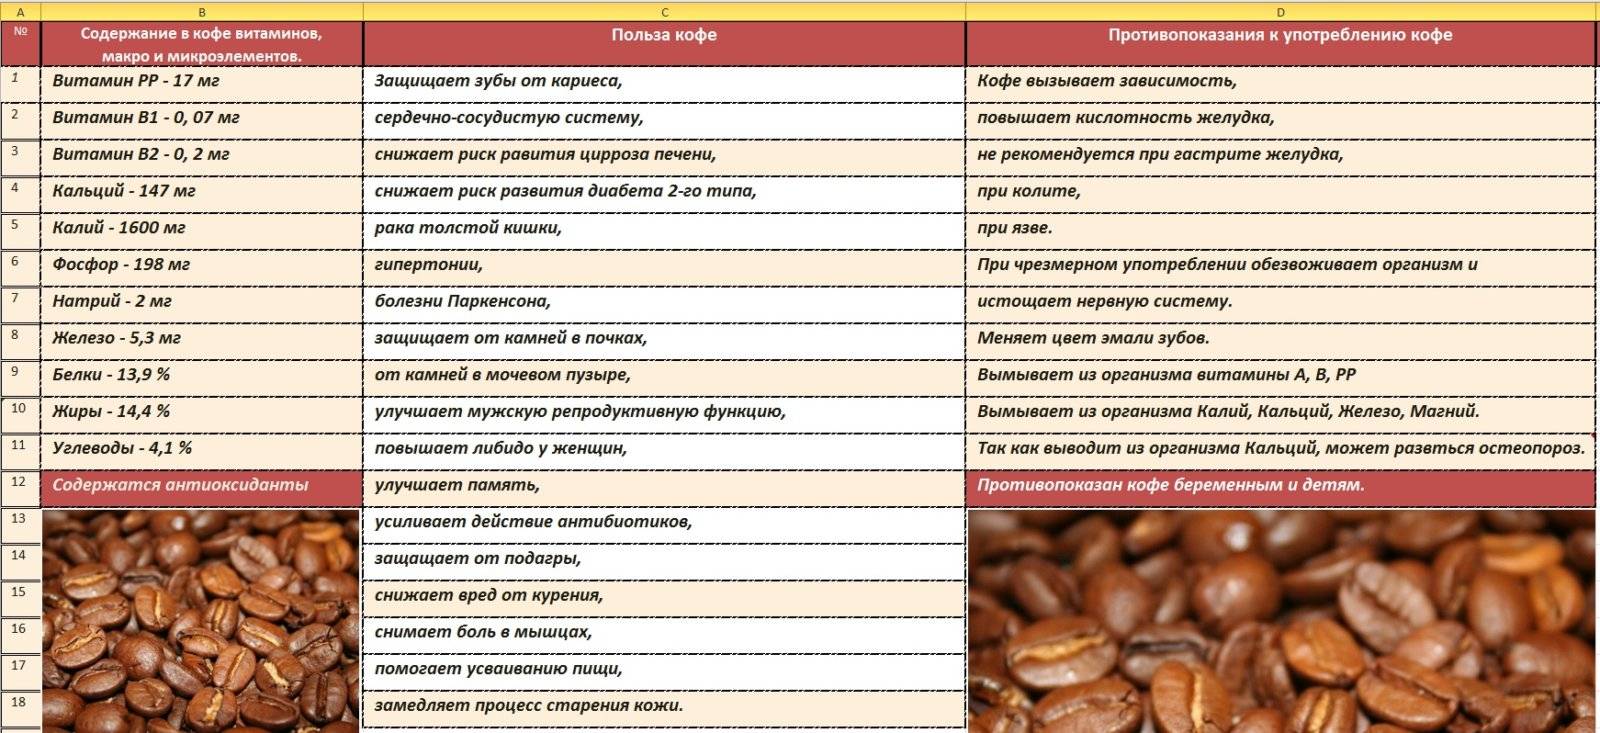 Кофе с молоком вред или польза: научная точка зрения